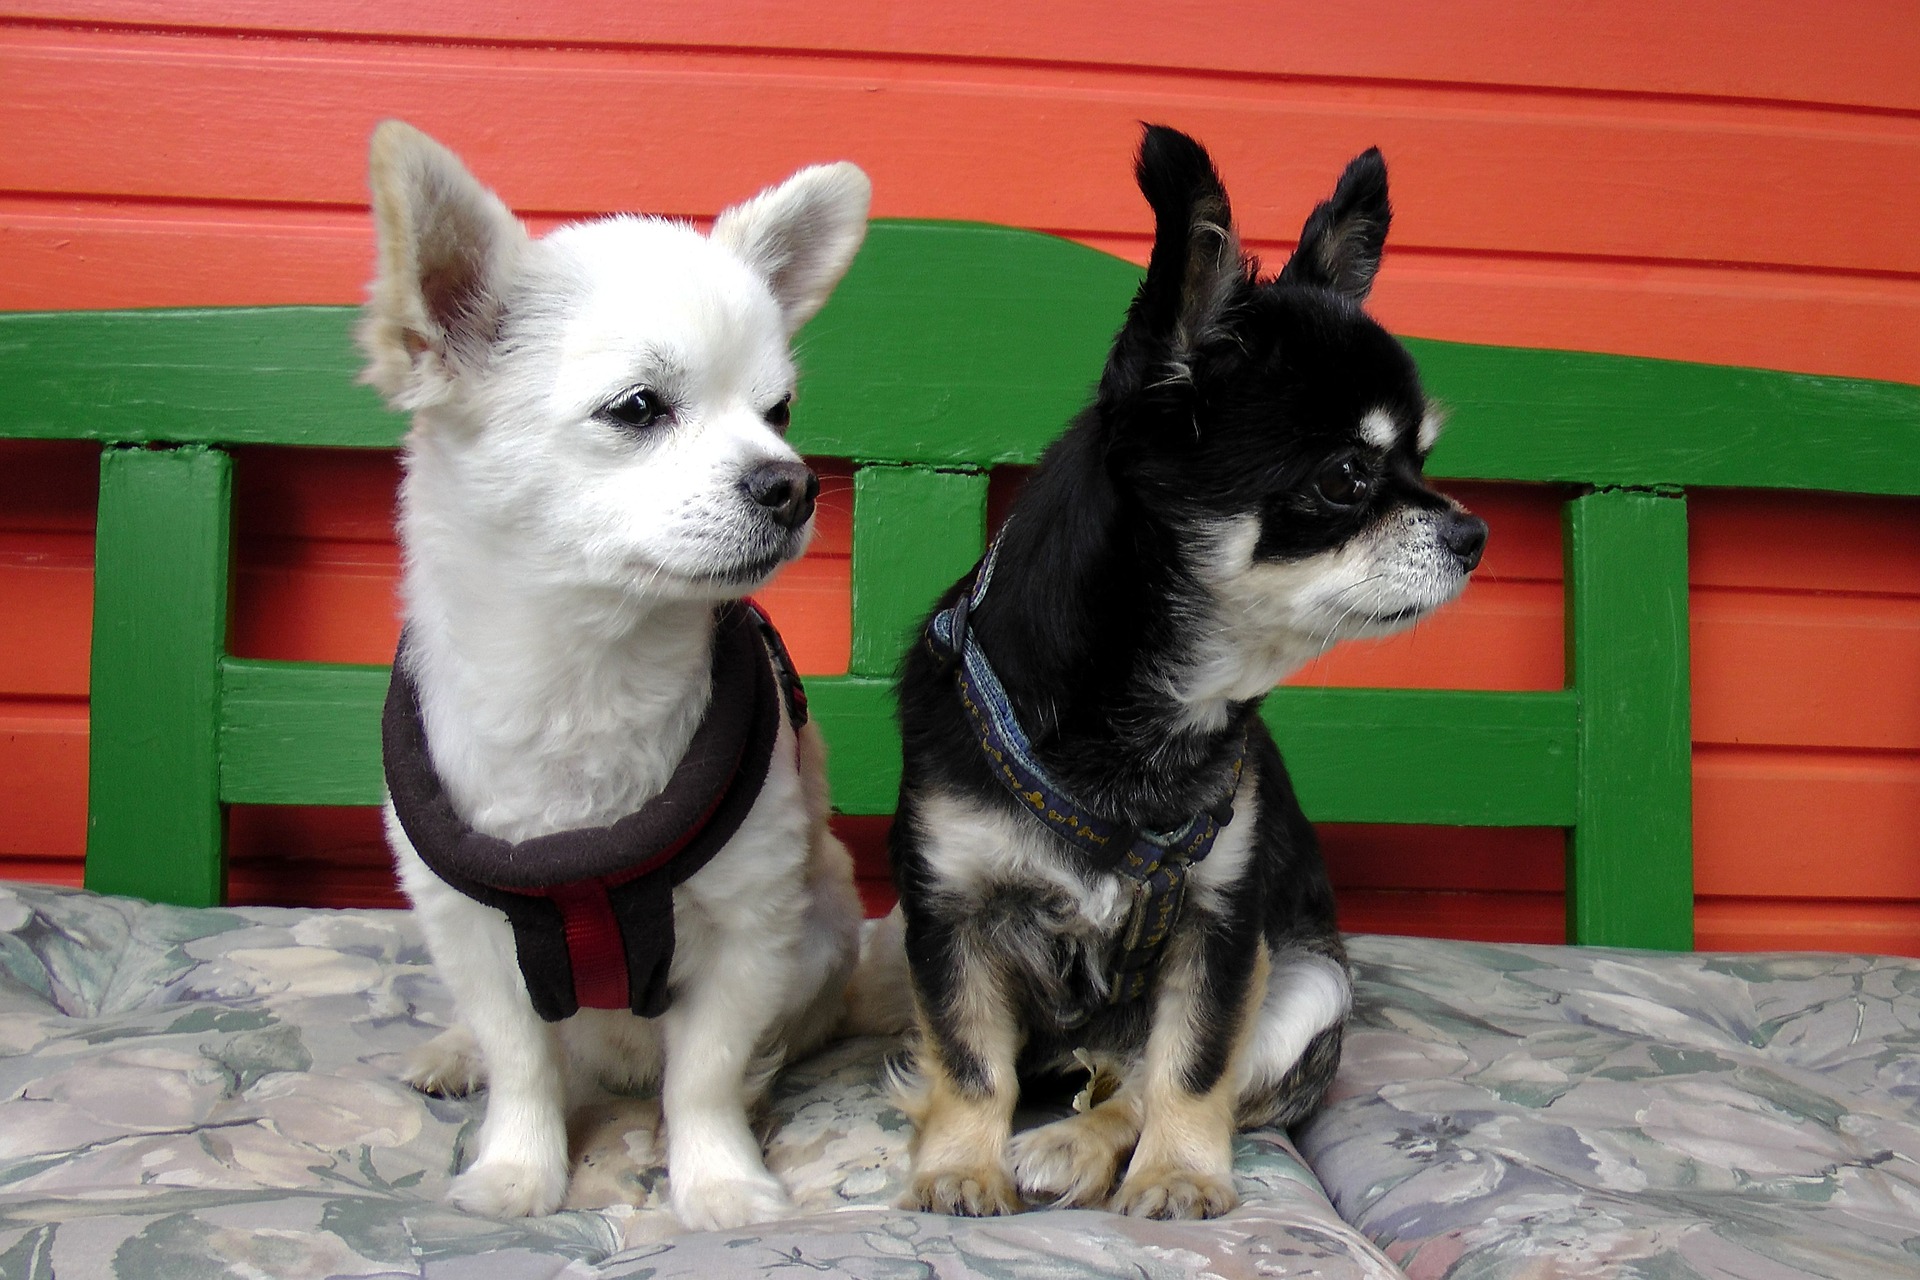 Navzdory své malé velikosti těla a sladkému vzhledu nesmíme zapomenout, že Chihuahua je pes a má stejné druhové potřeby jako její větší příbuzní. Čivava není hračka.